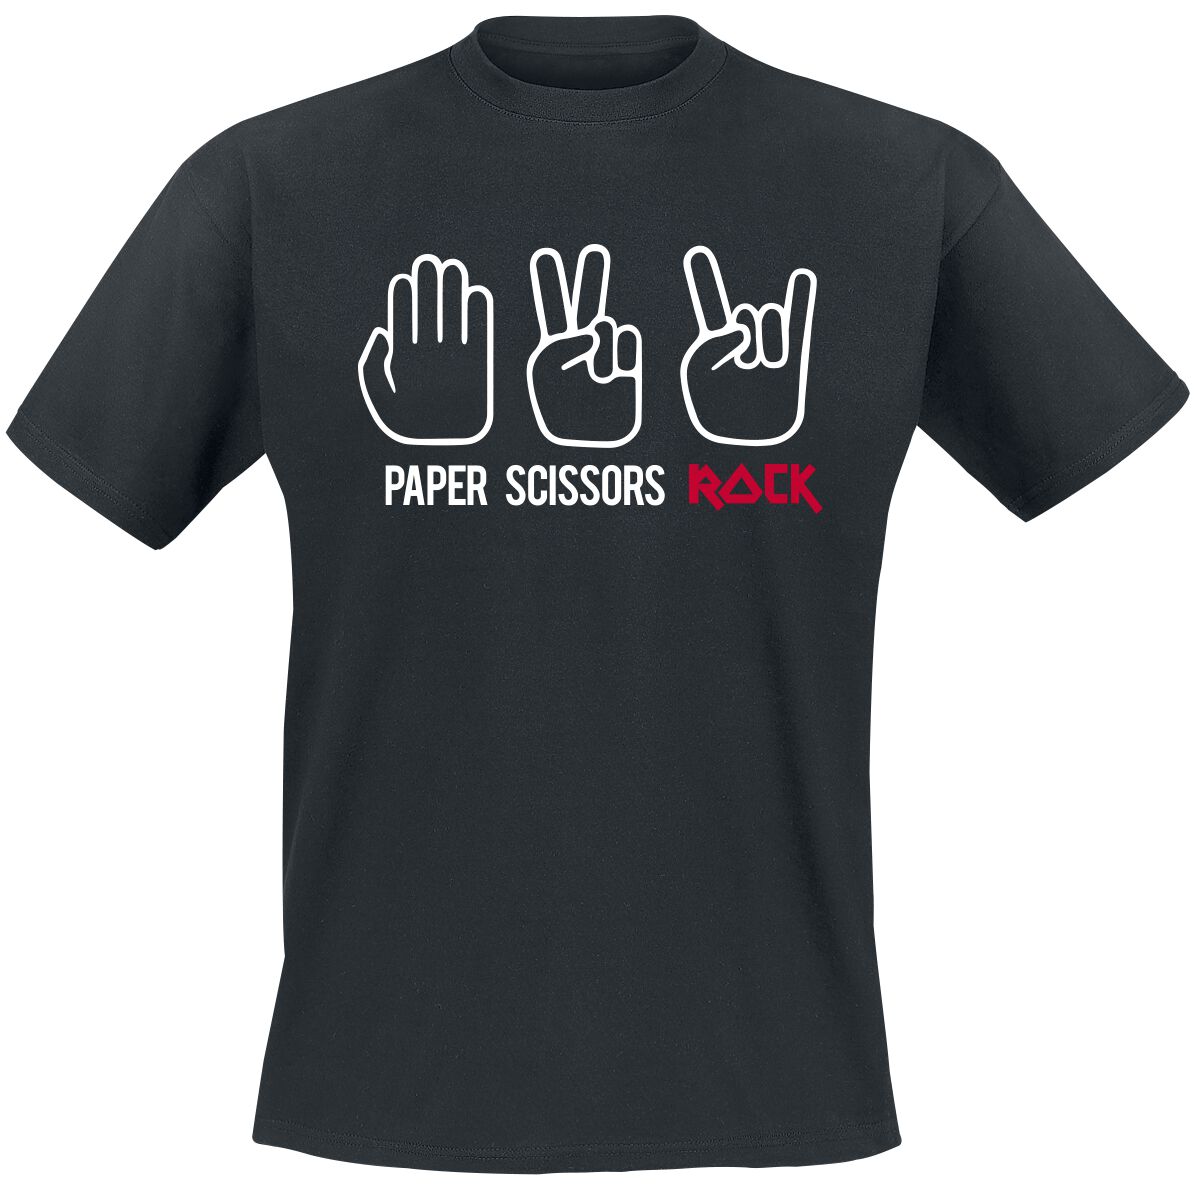 Sprüche T-Shirt - Paper Scissors Rock - S bis 3XL - für Männer - Größe XXL - schwarz